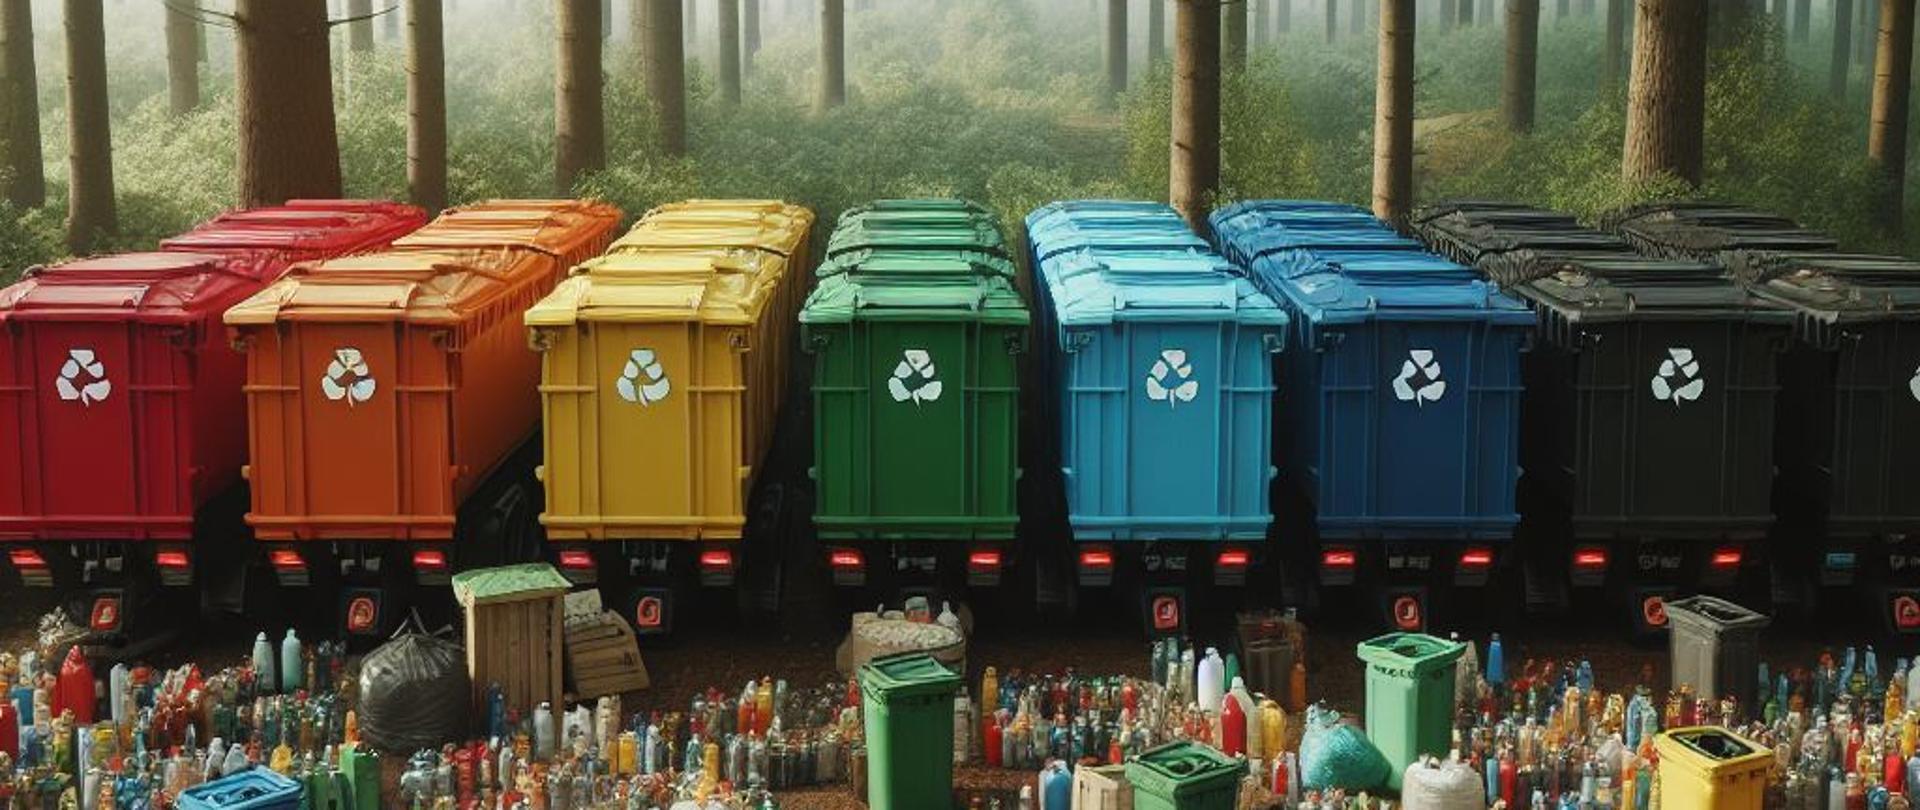 Zdjęcie przedstawia scenę w lesie z wysokimi, cienkimi drzewami i mglistą atmosferą. Na pierwszym planie ustawione są kolorowe kosze na odpady. Kolor koszy wskazuje na różne rodzaje odpadów. Wokół koszy rozrzucone są duże ilości śmieci, w tym butelki plastikowe, torby i pojemniki. Ewidentny jest kontrast między naturalnym otoczeniem lasu a zanieczyszczeniem powstałym przez śmieci.